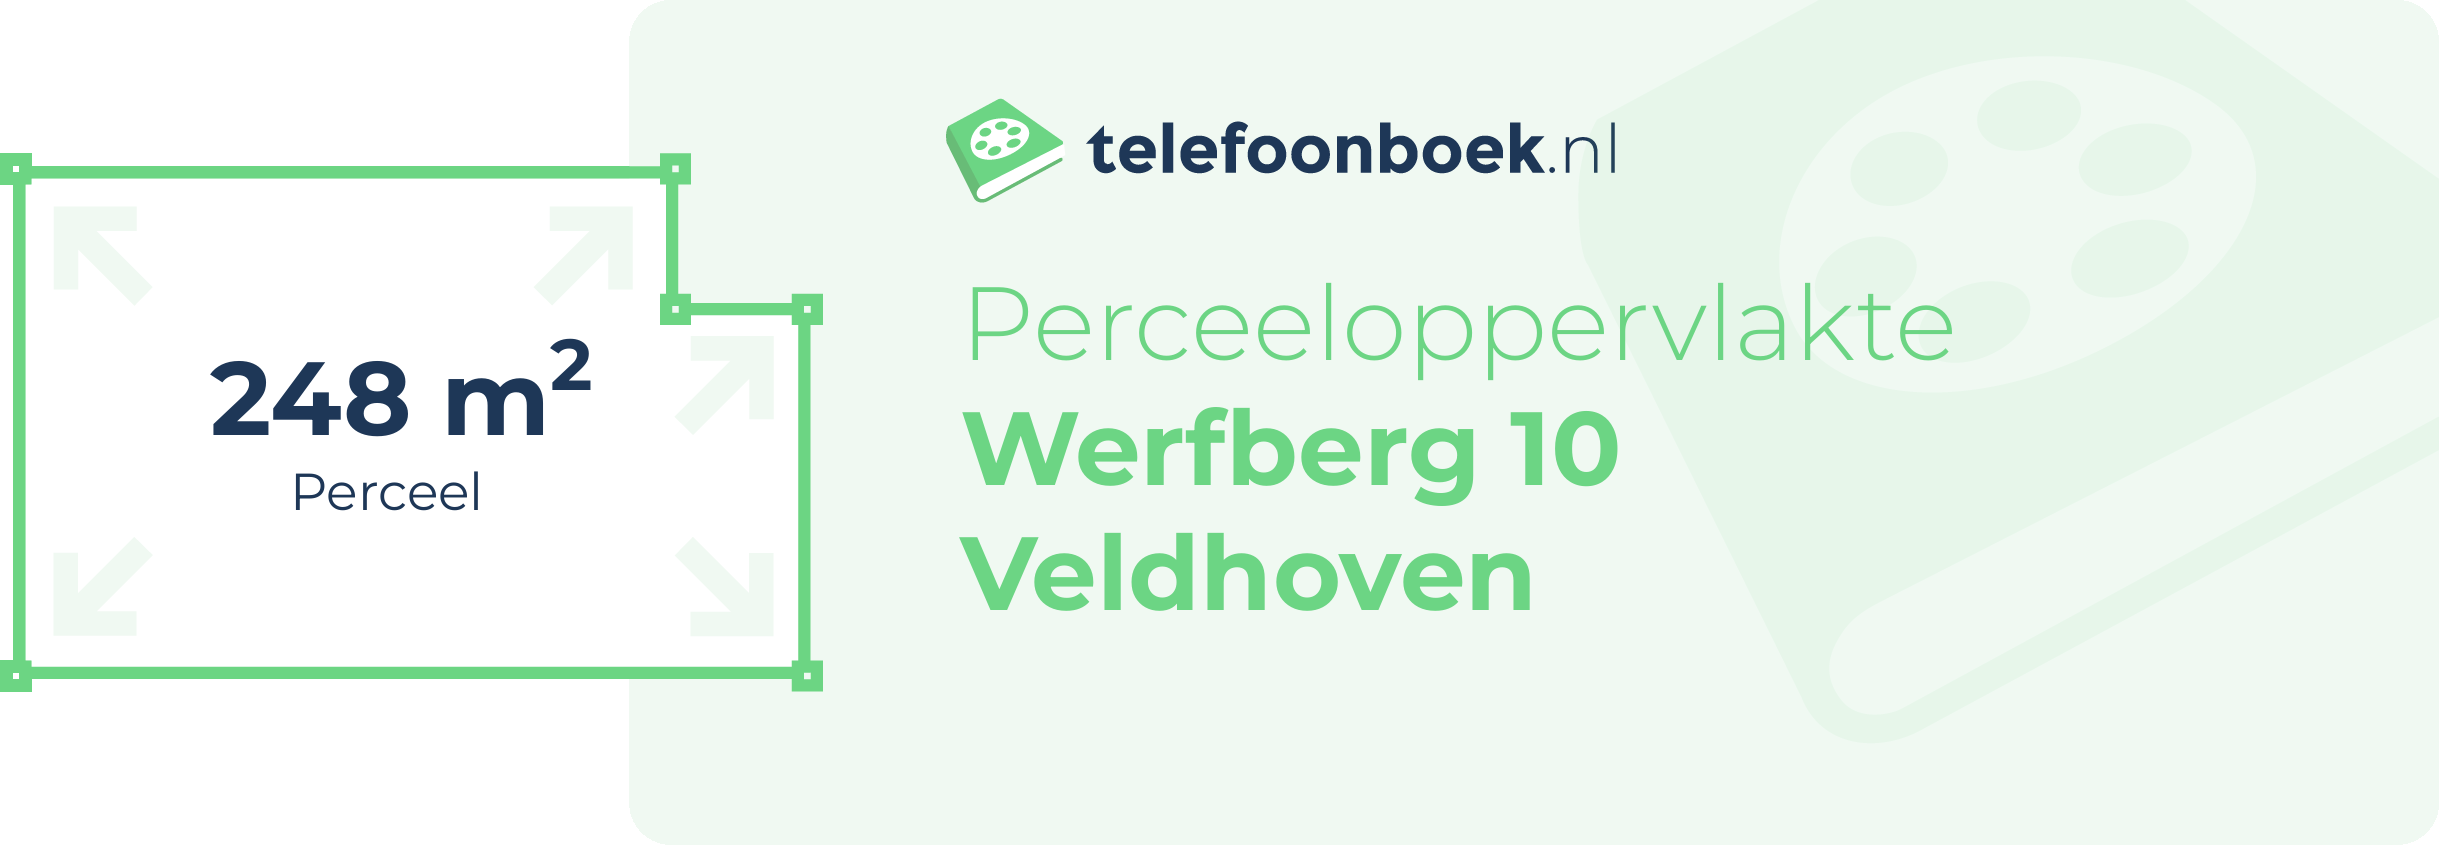 Perceeloppervlakte Werfberg 10 Veldhoven